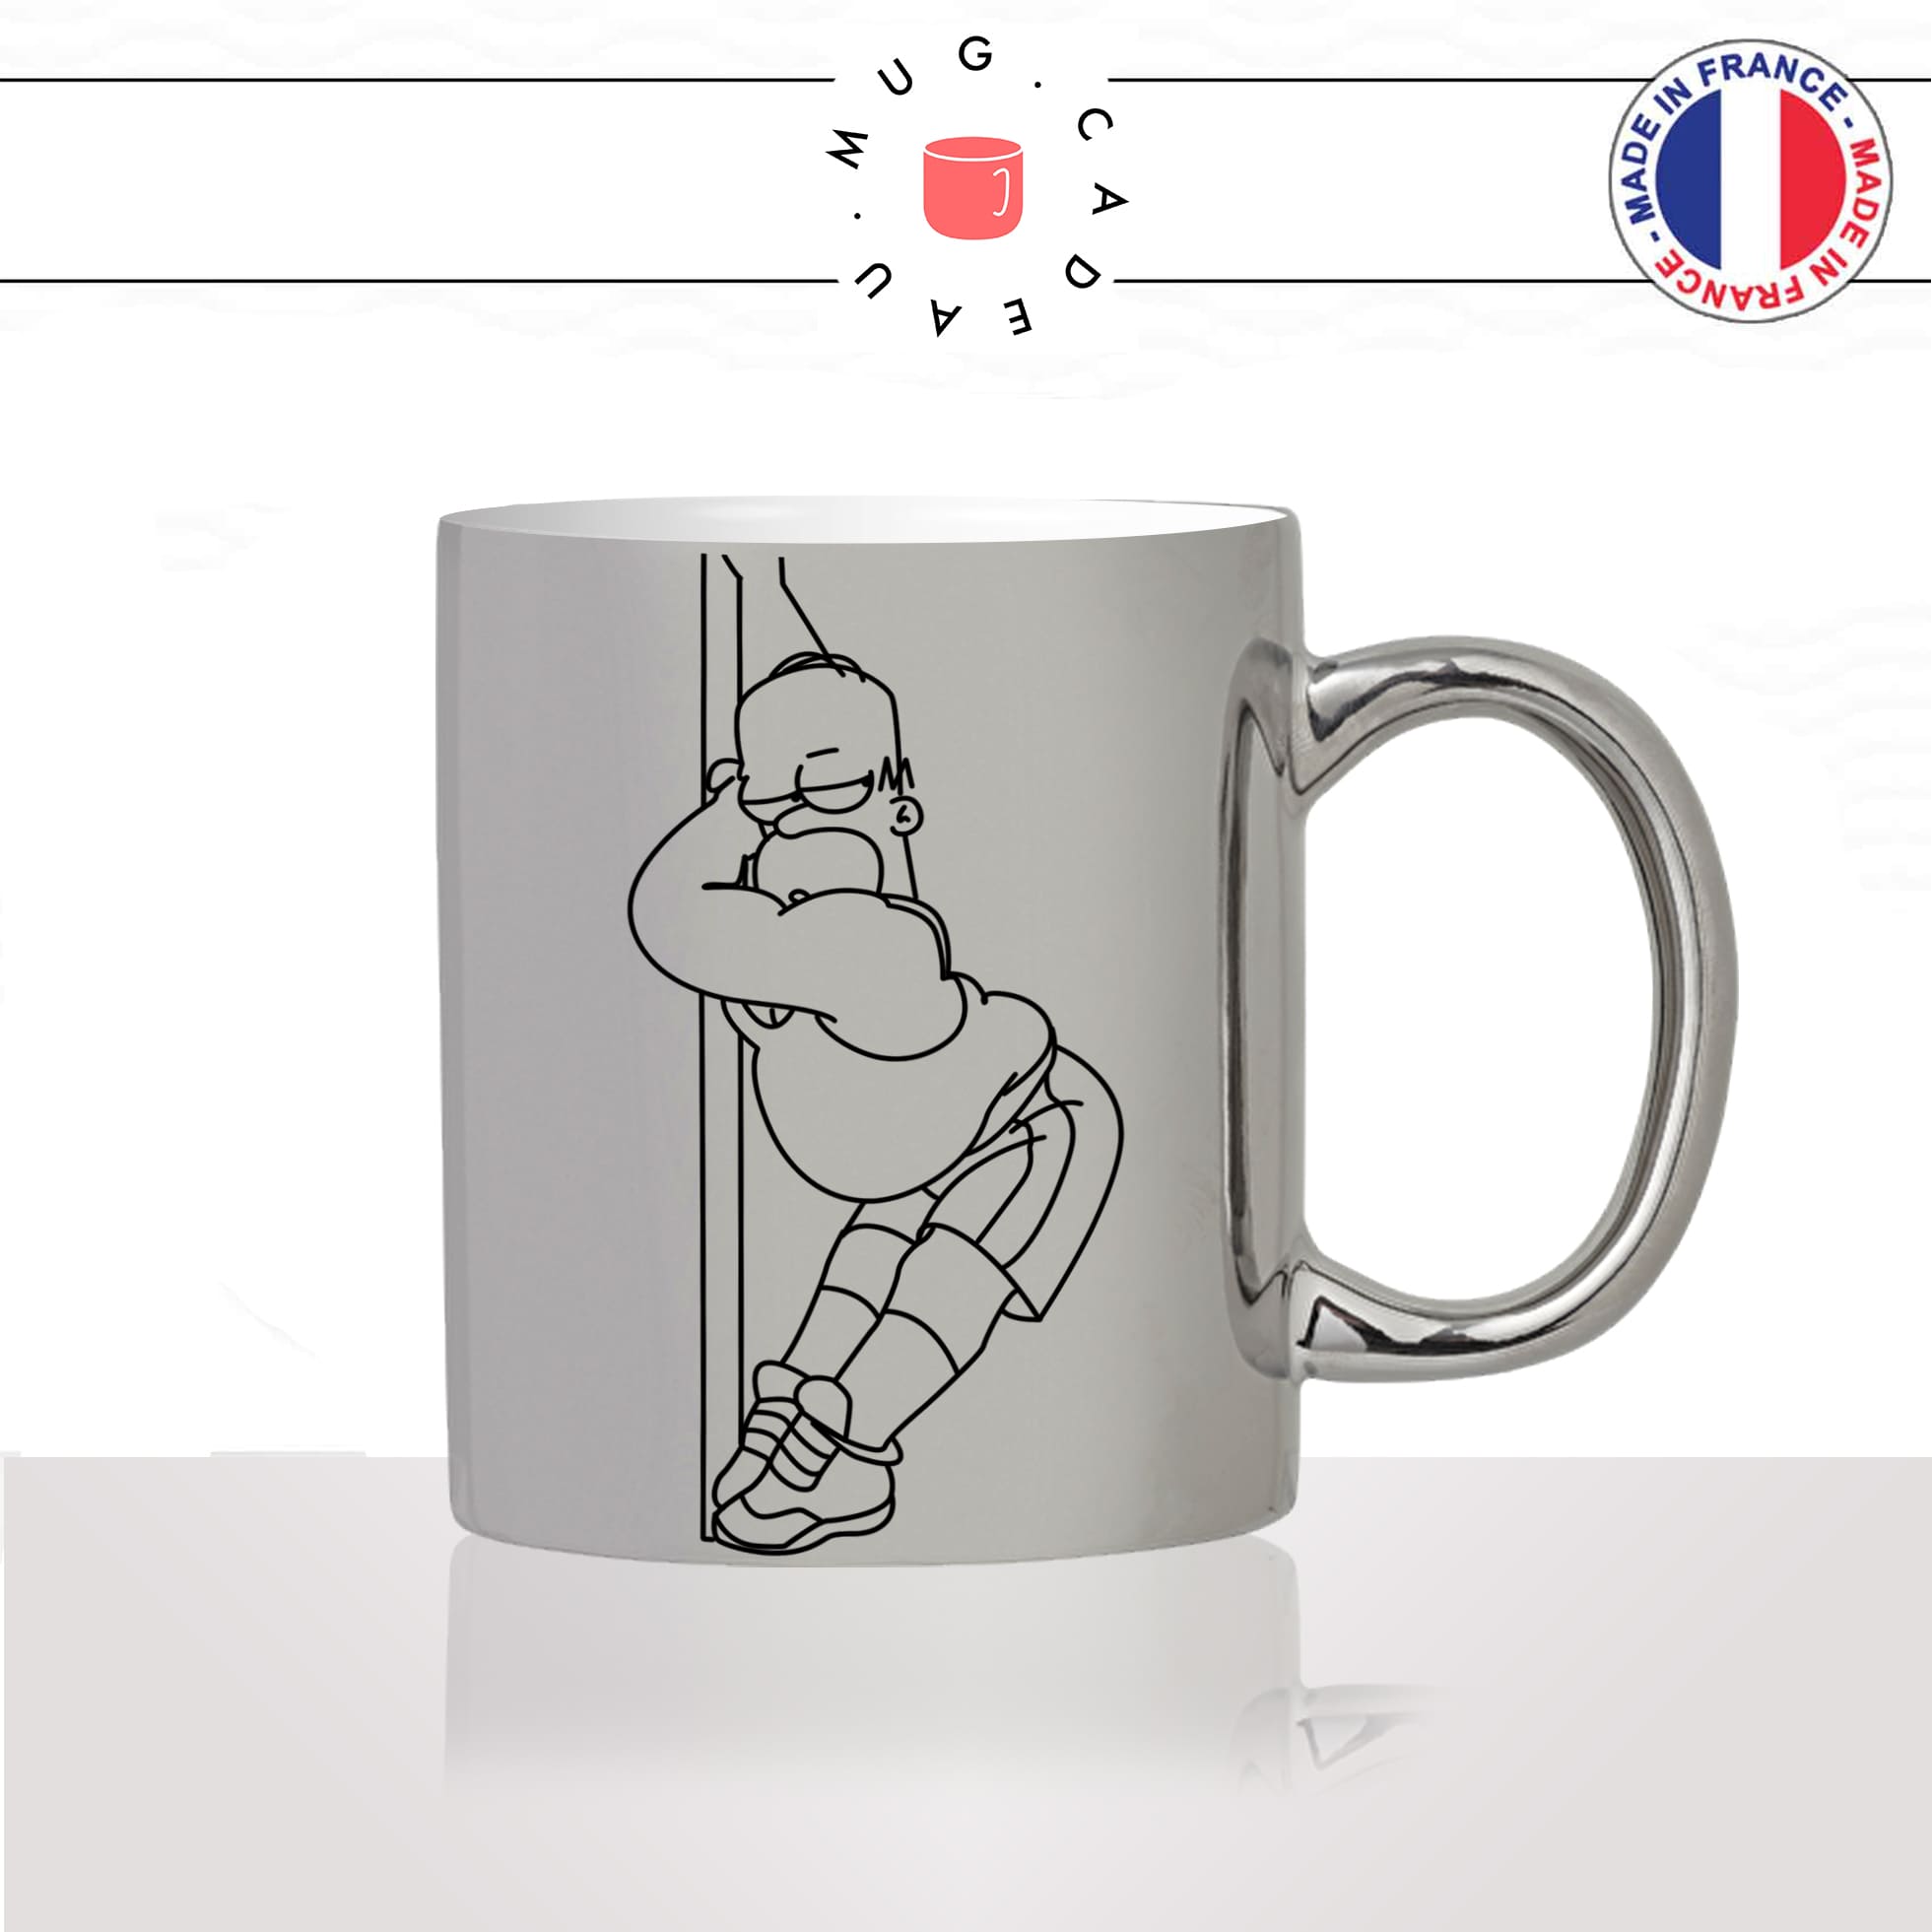 mug-tasse-argent-argenté-silver-film-série-simpsons-homer-pompier-dance-sexy-fireman-metier-idée-cadeau-fun-cool-café-thé2